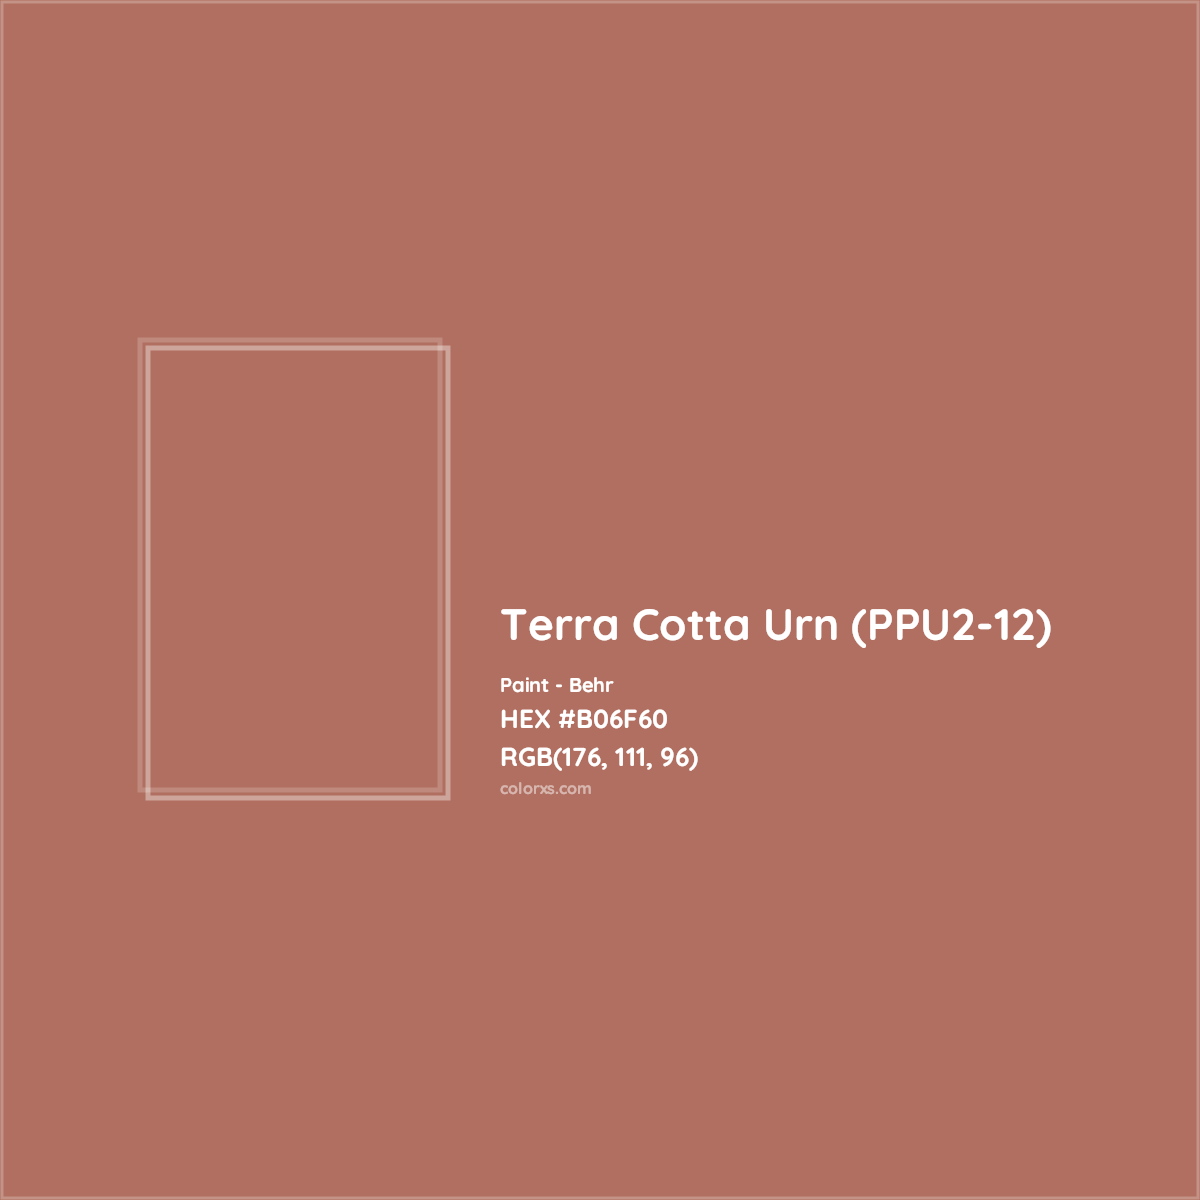 HEX #B06F60 Terra Cotta Urn (PPU2-12) Paint Behr - Color Code